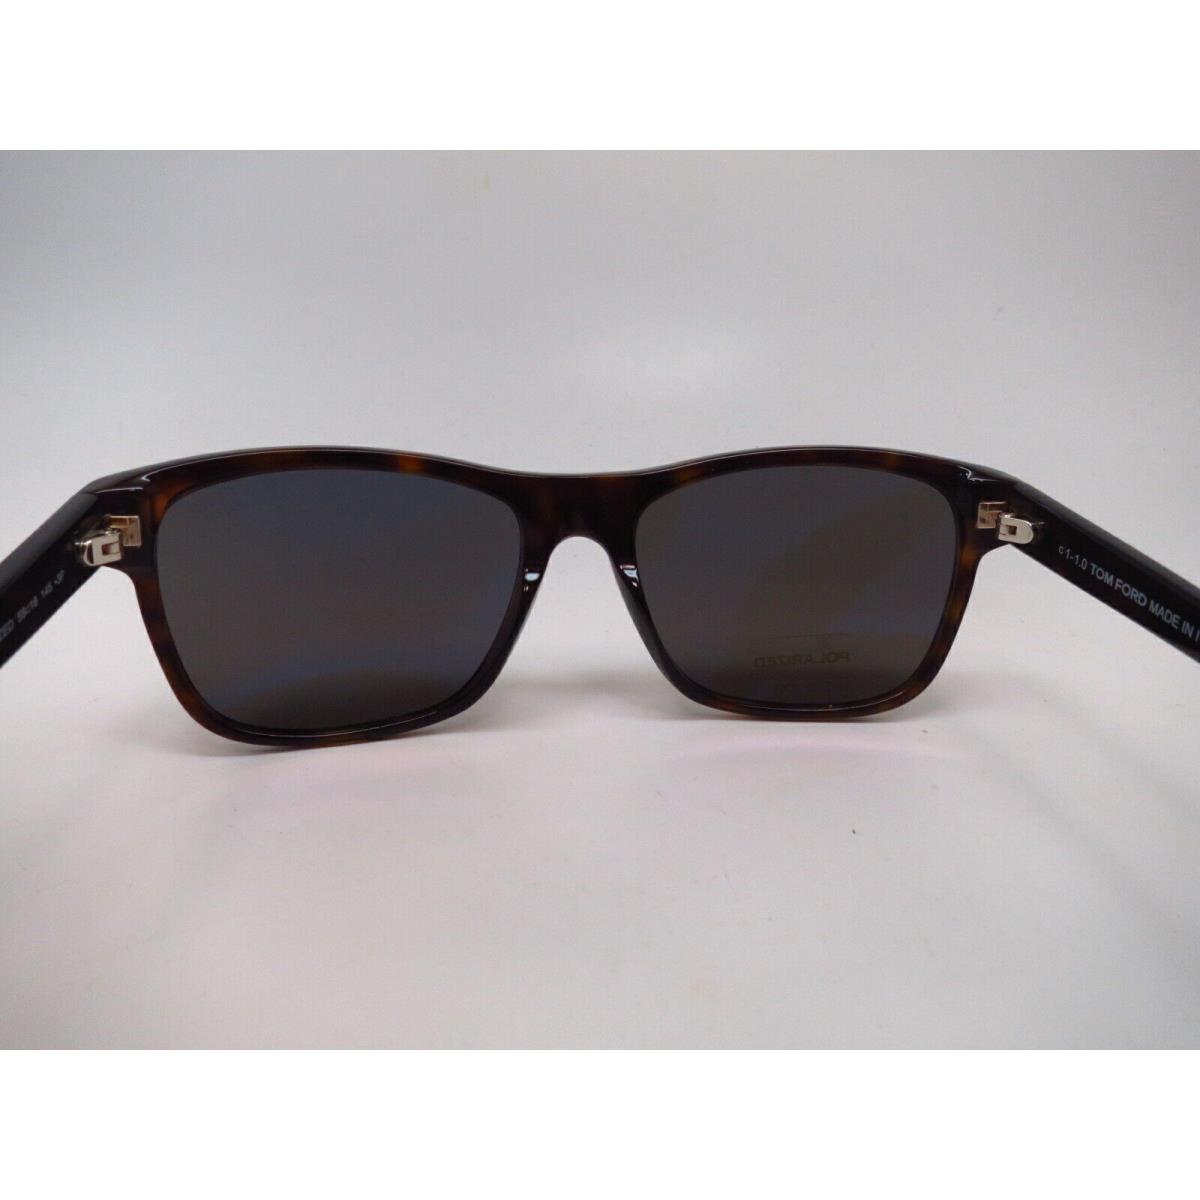 Tom Ford eyeglasses  - Dark Havana Frame, 52D Code 5